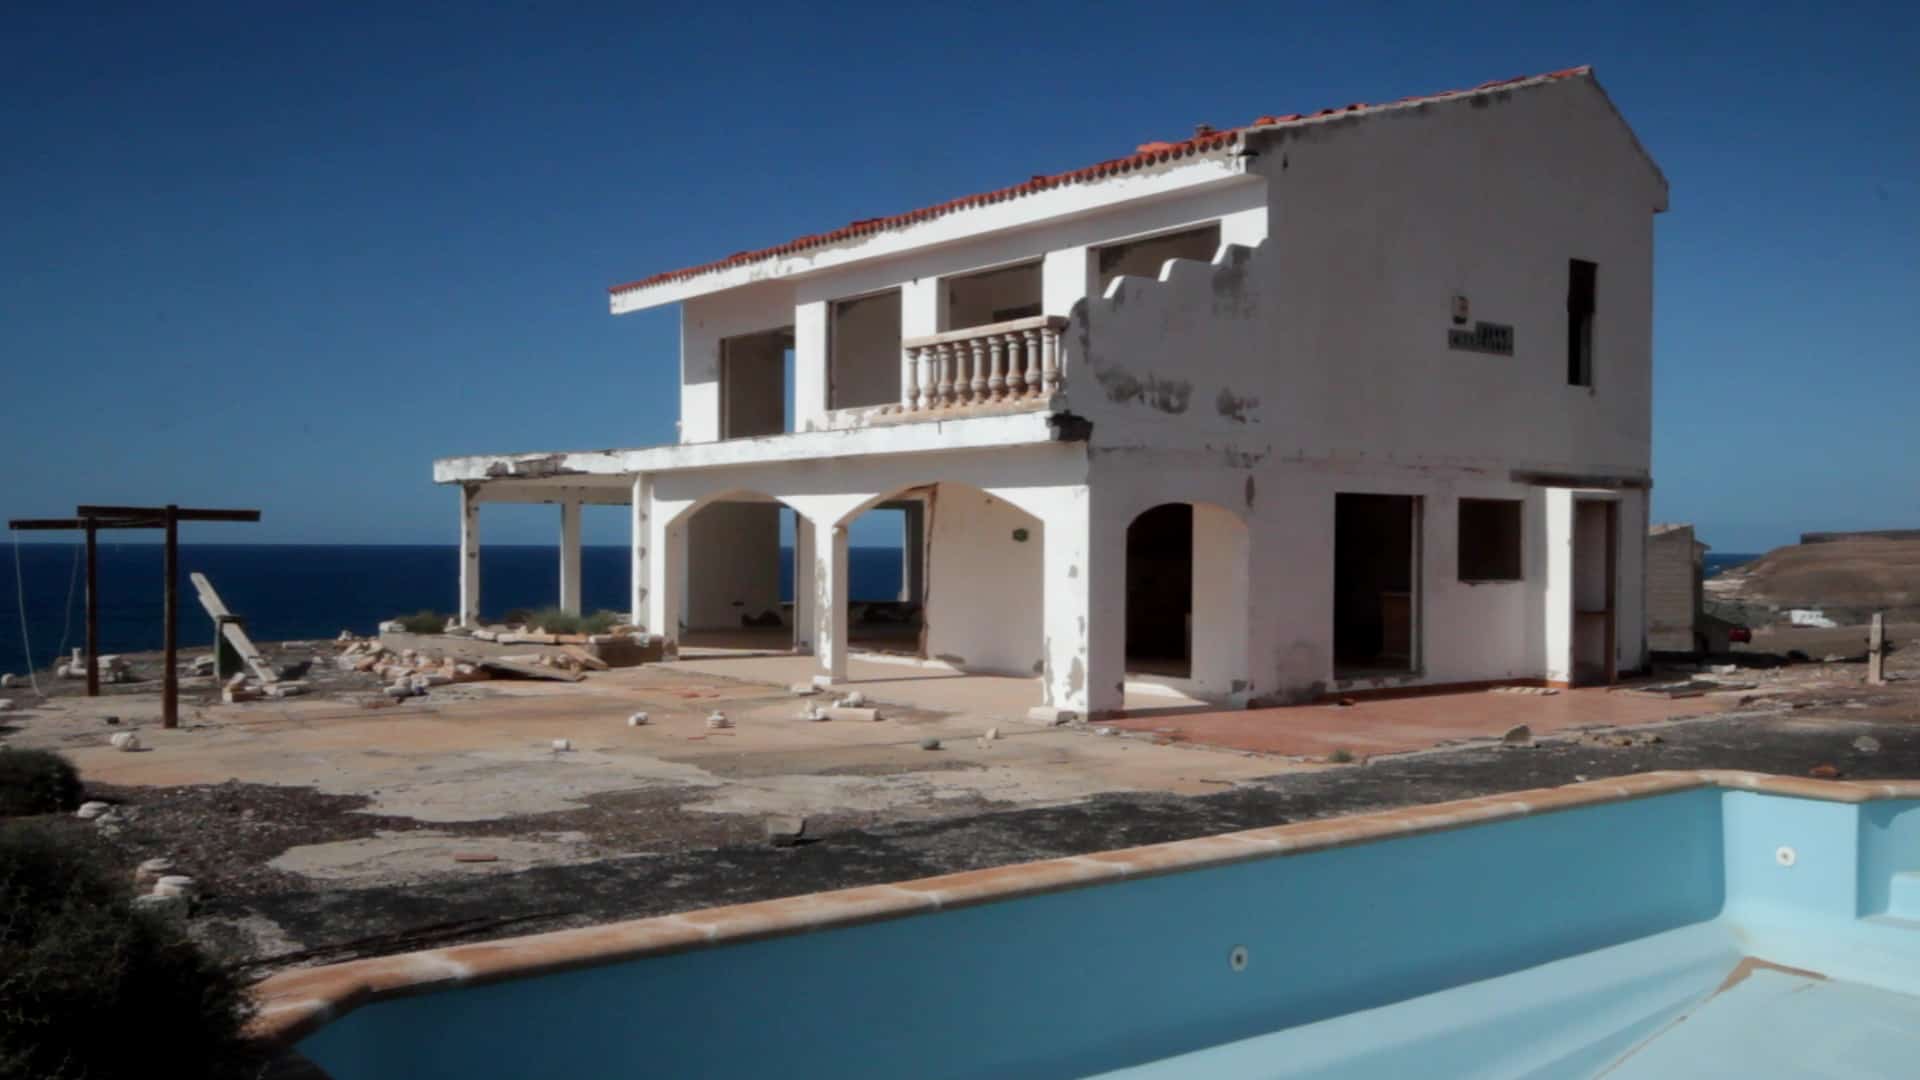 Shattered Dreams – Villa Charlotte, Aguas Verdes, Fuerteventura